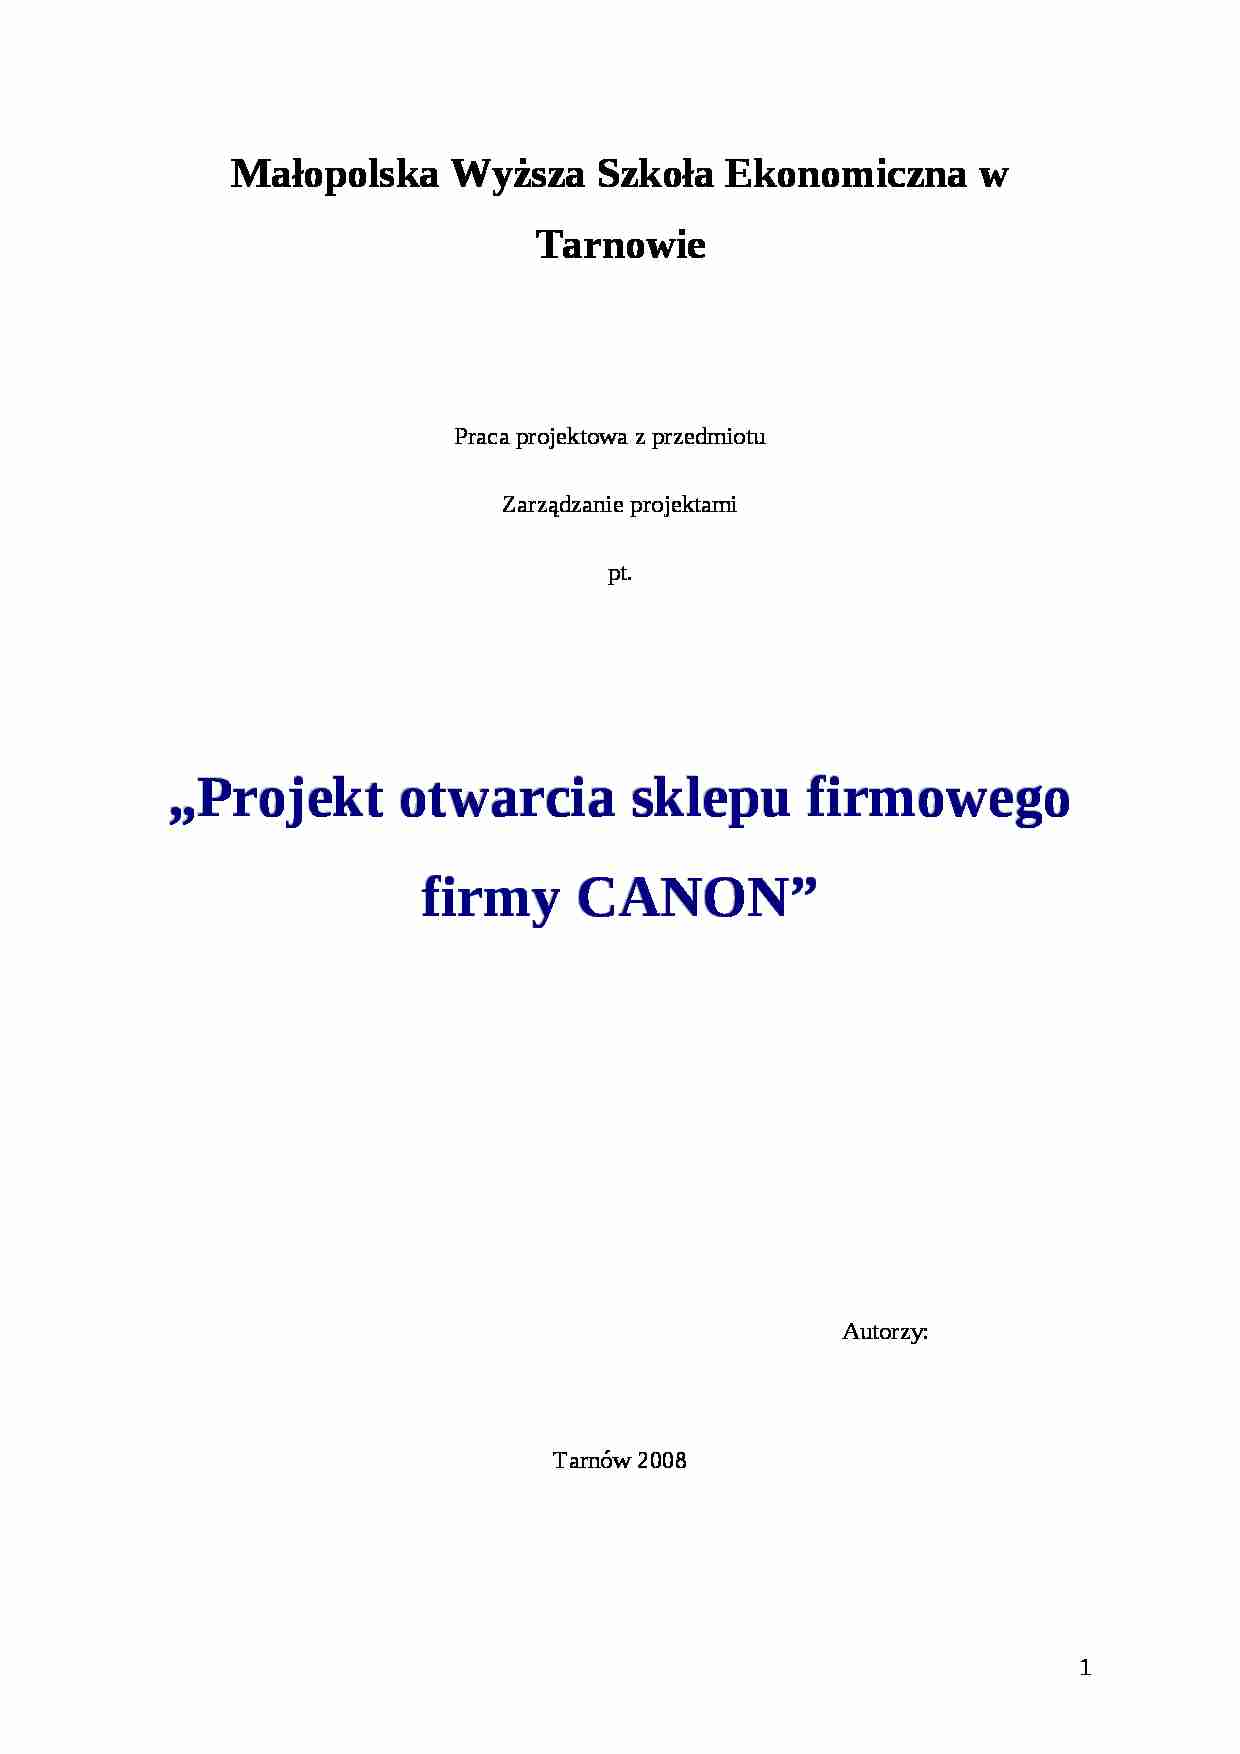 Zarządzanie projektami - praca,  prof. Stabryła - firma Canon - strona 1